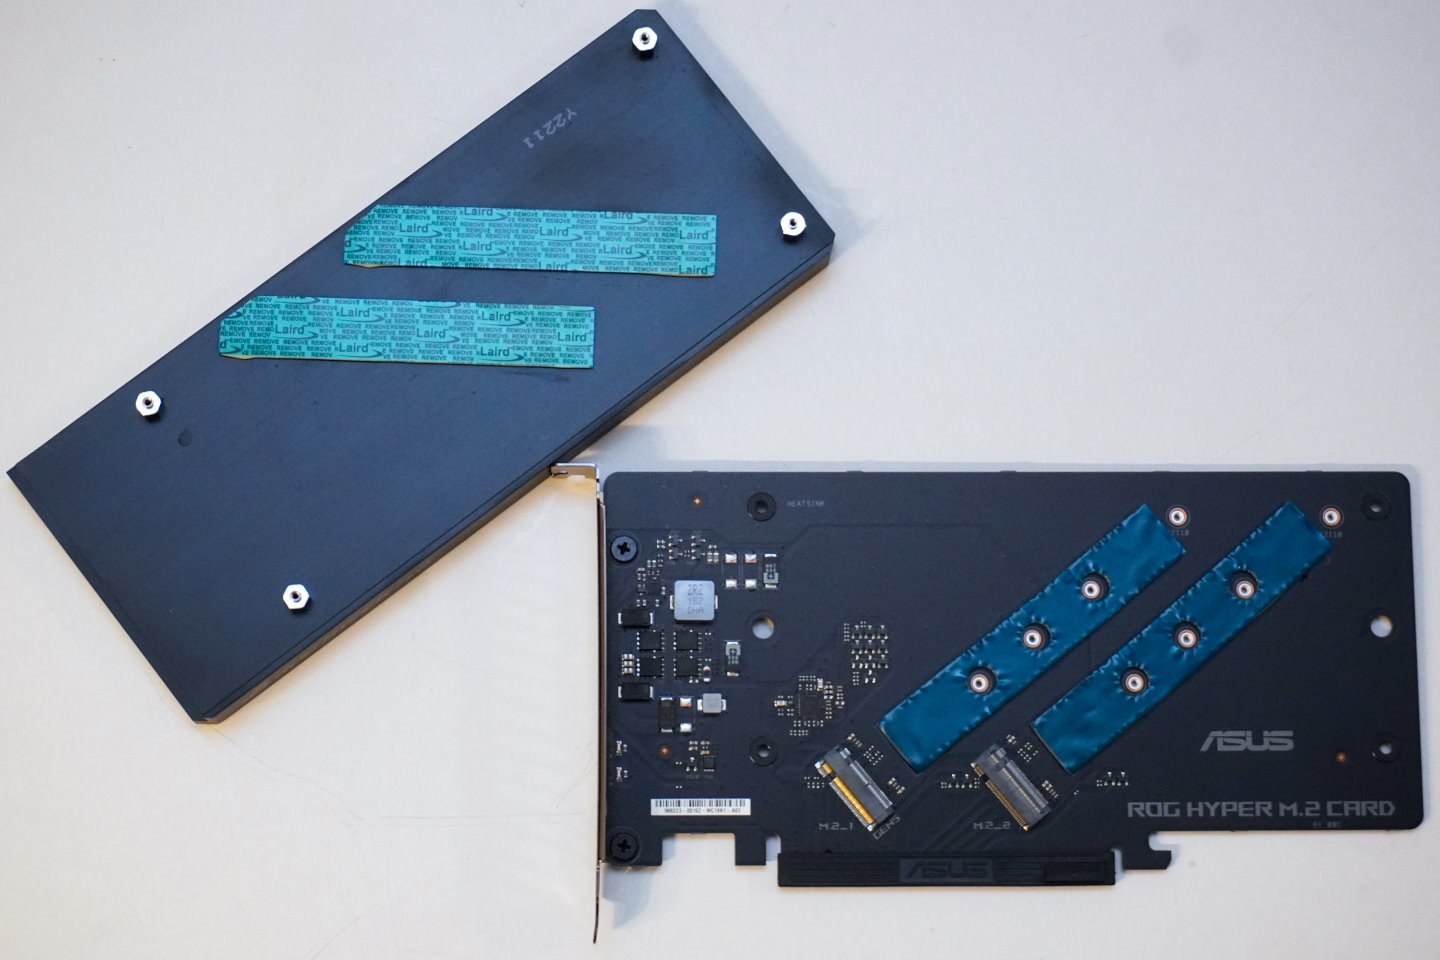 擴充卡的大型散熱片有助於壓制固態硬碟運作時的溫度。